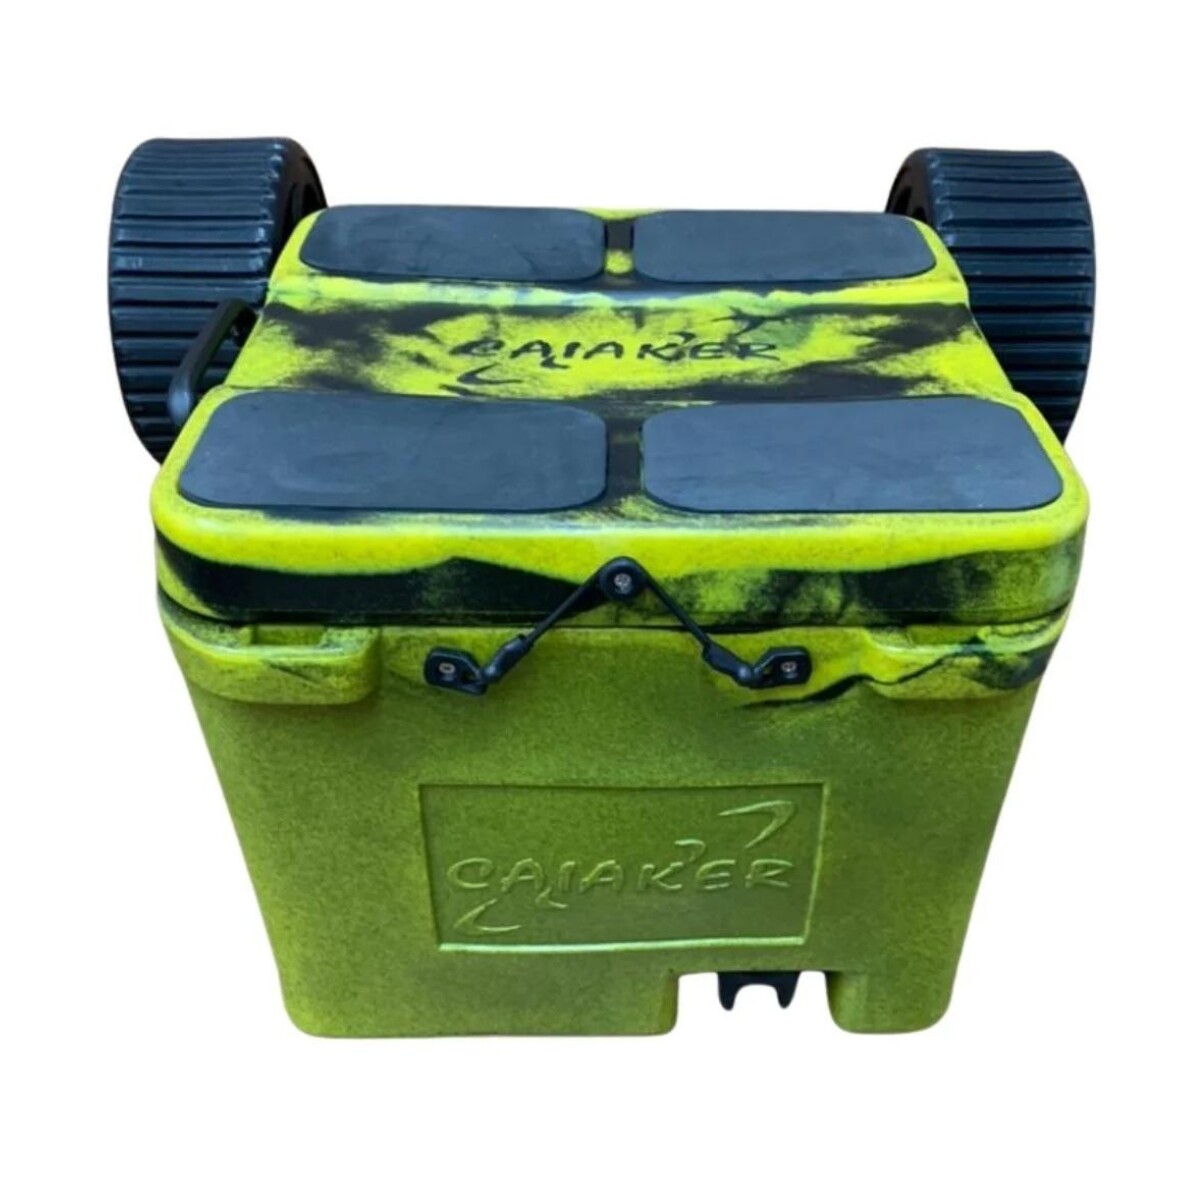 Carrito conservadora para kayaks Smart Cooler - Caiaker - Camo Verde 